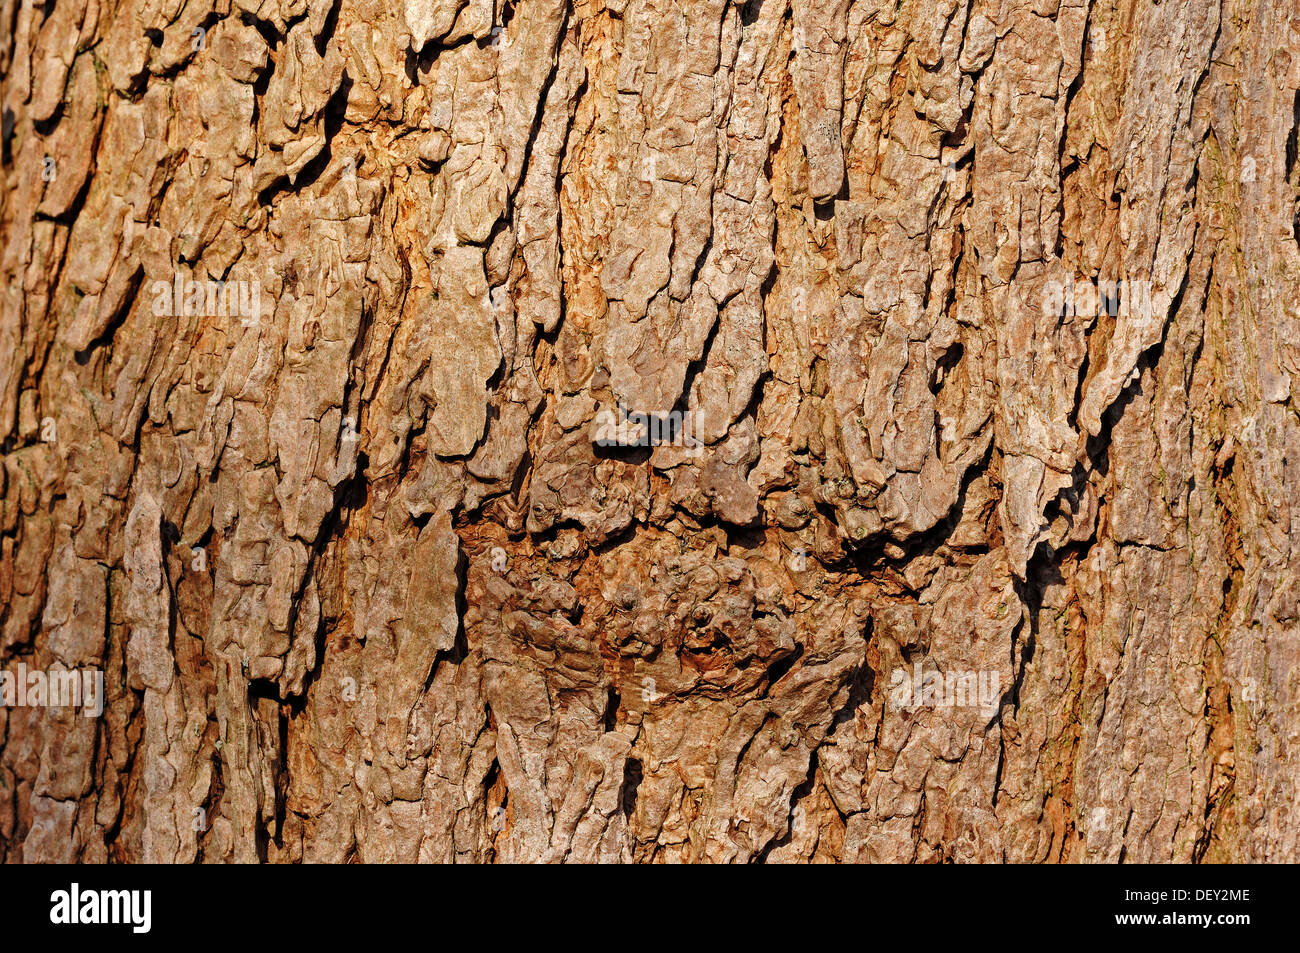 Southern Catalpa, Cigar Tree or Indian Bean Tree (Catalpa bignonioides, Catalpa syringifolia), detail of bark Stock Photo